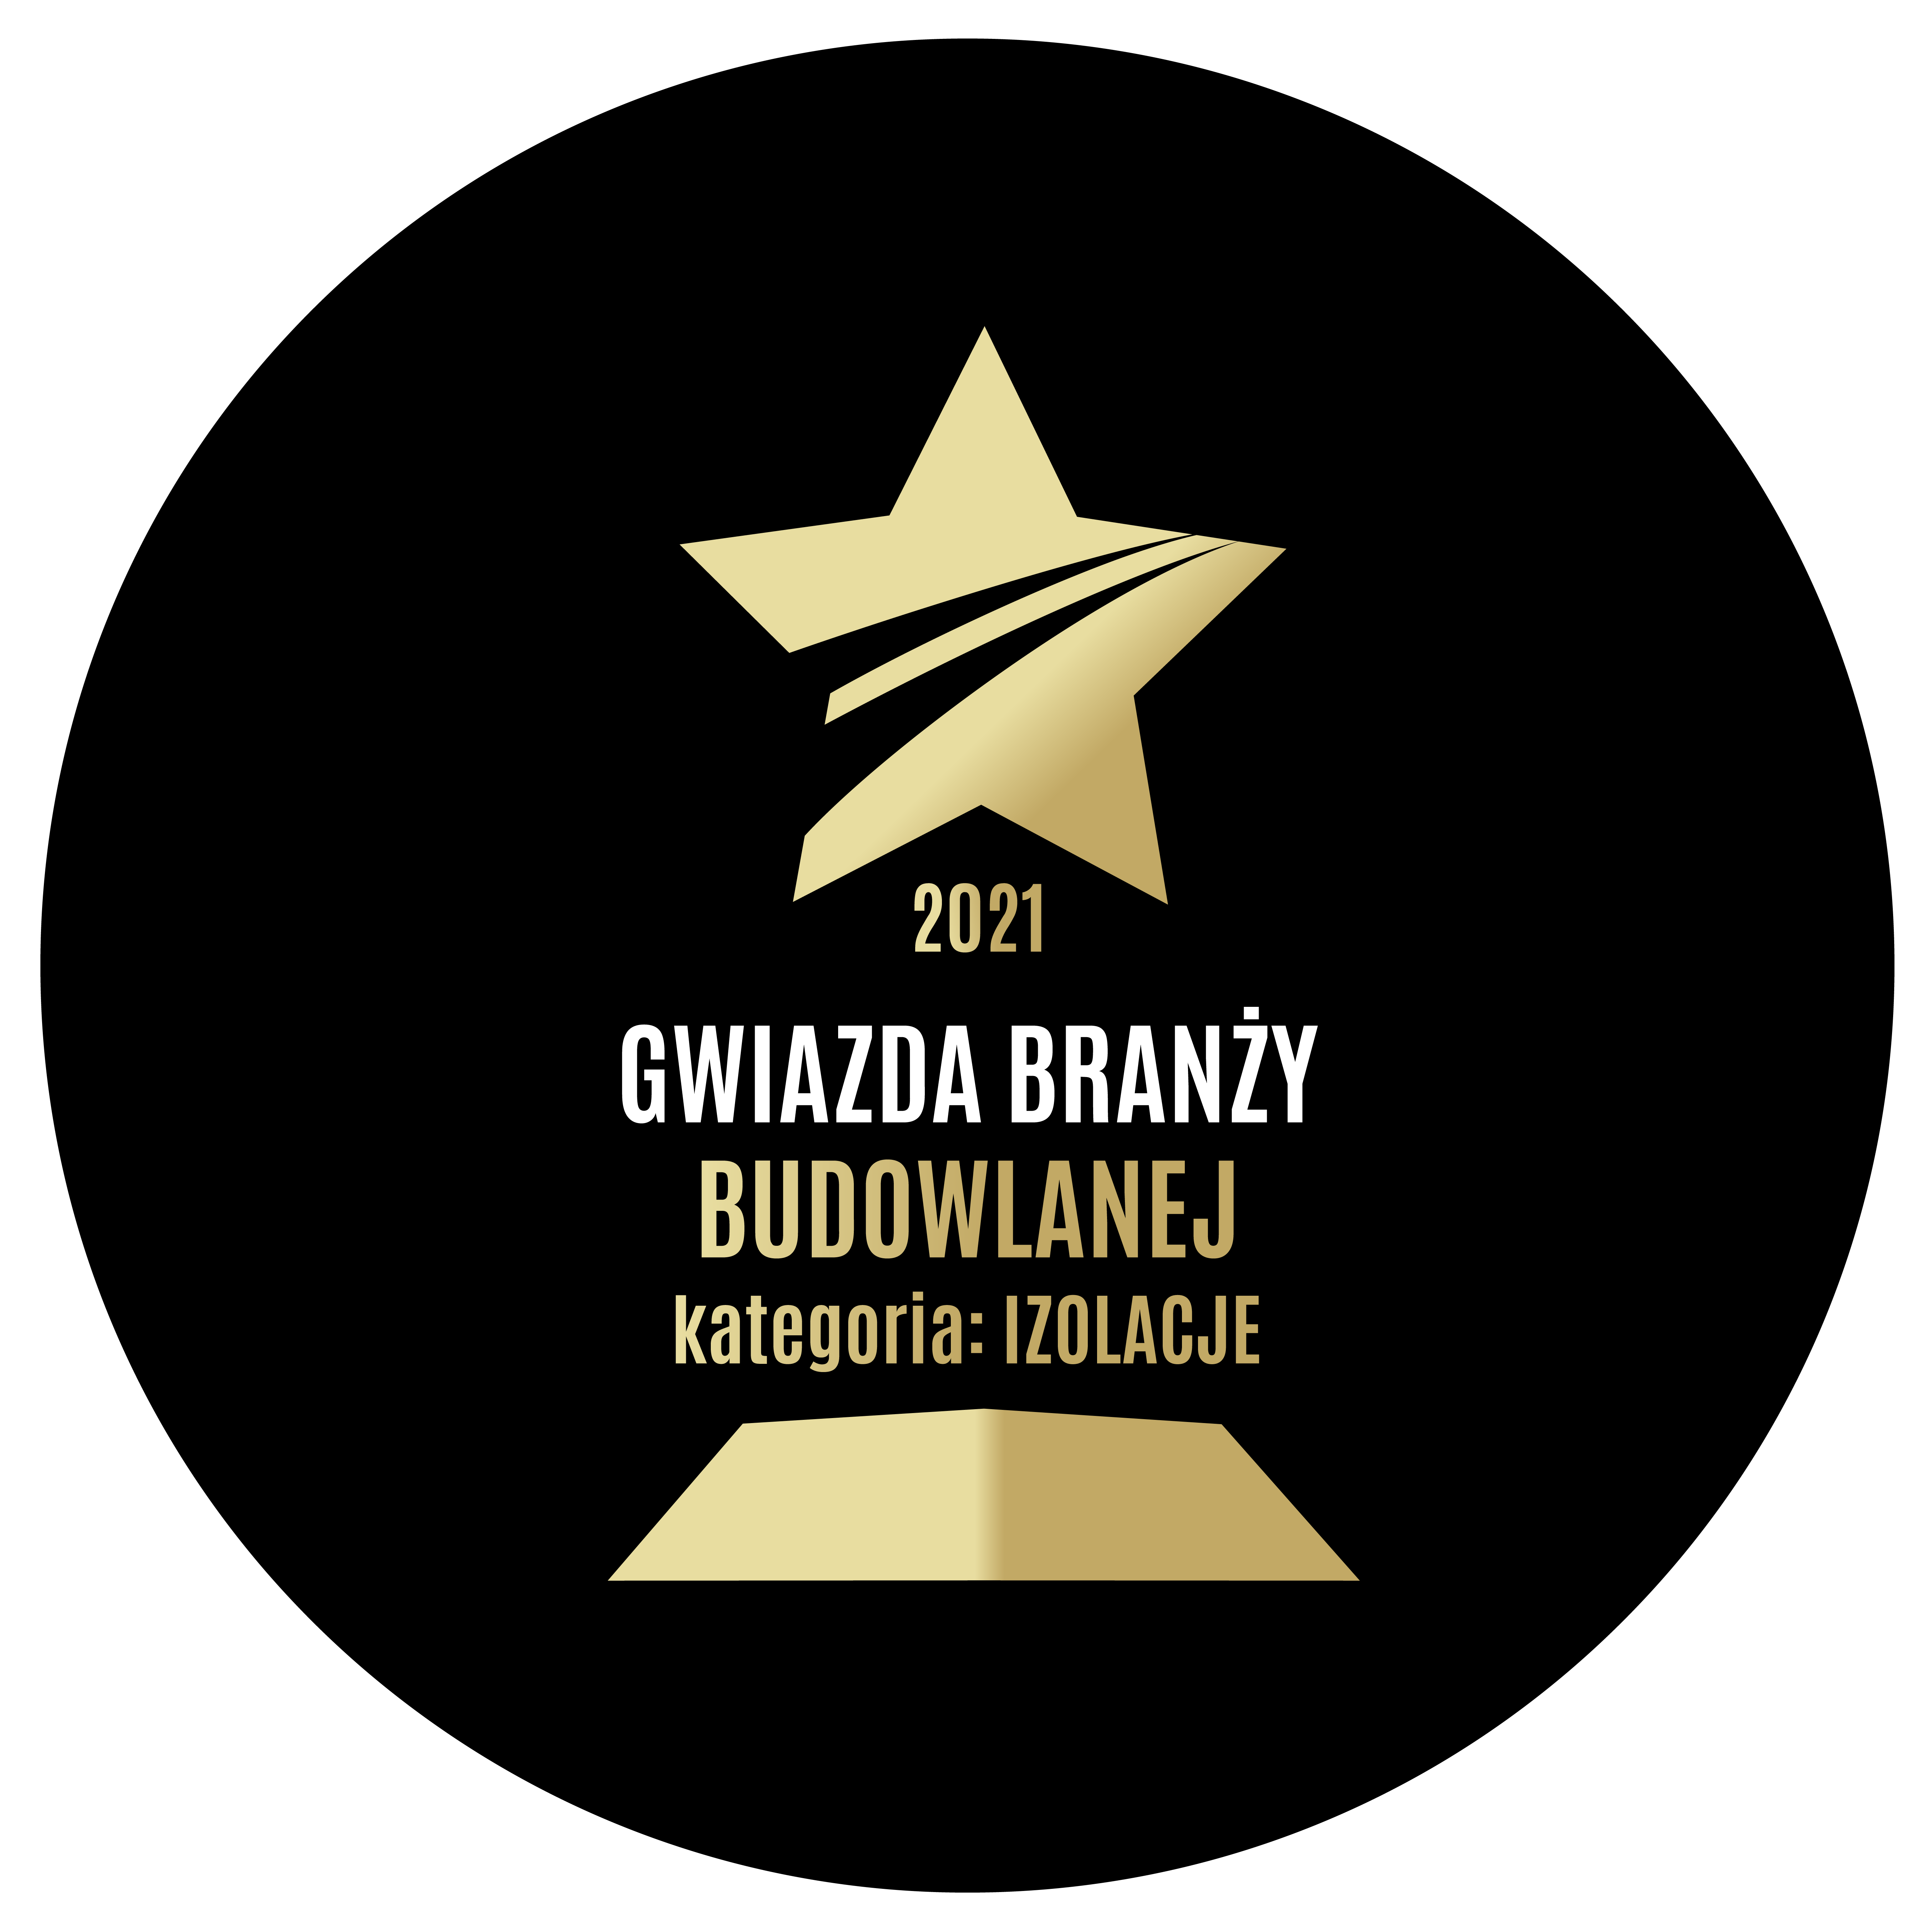 Gwiazda branzy budowlanej IZOLACJE black gold 014811